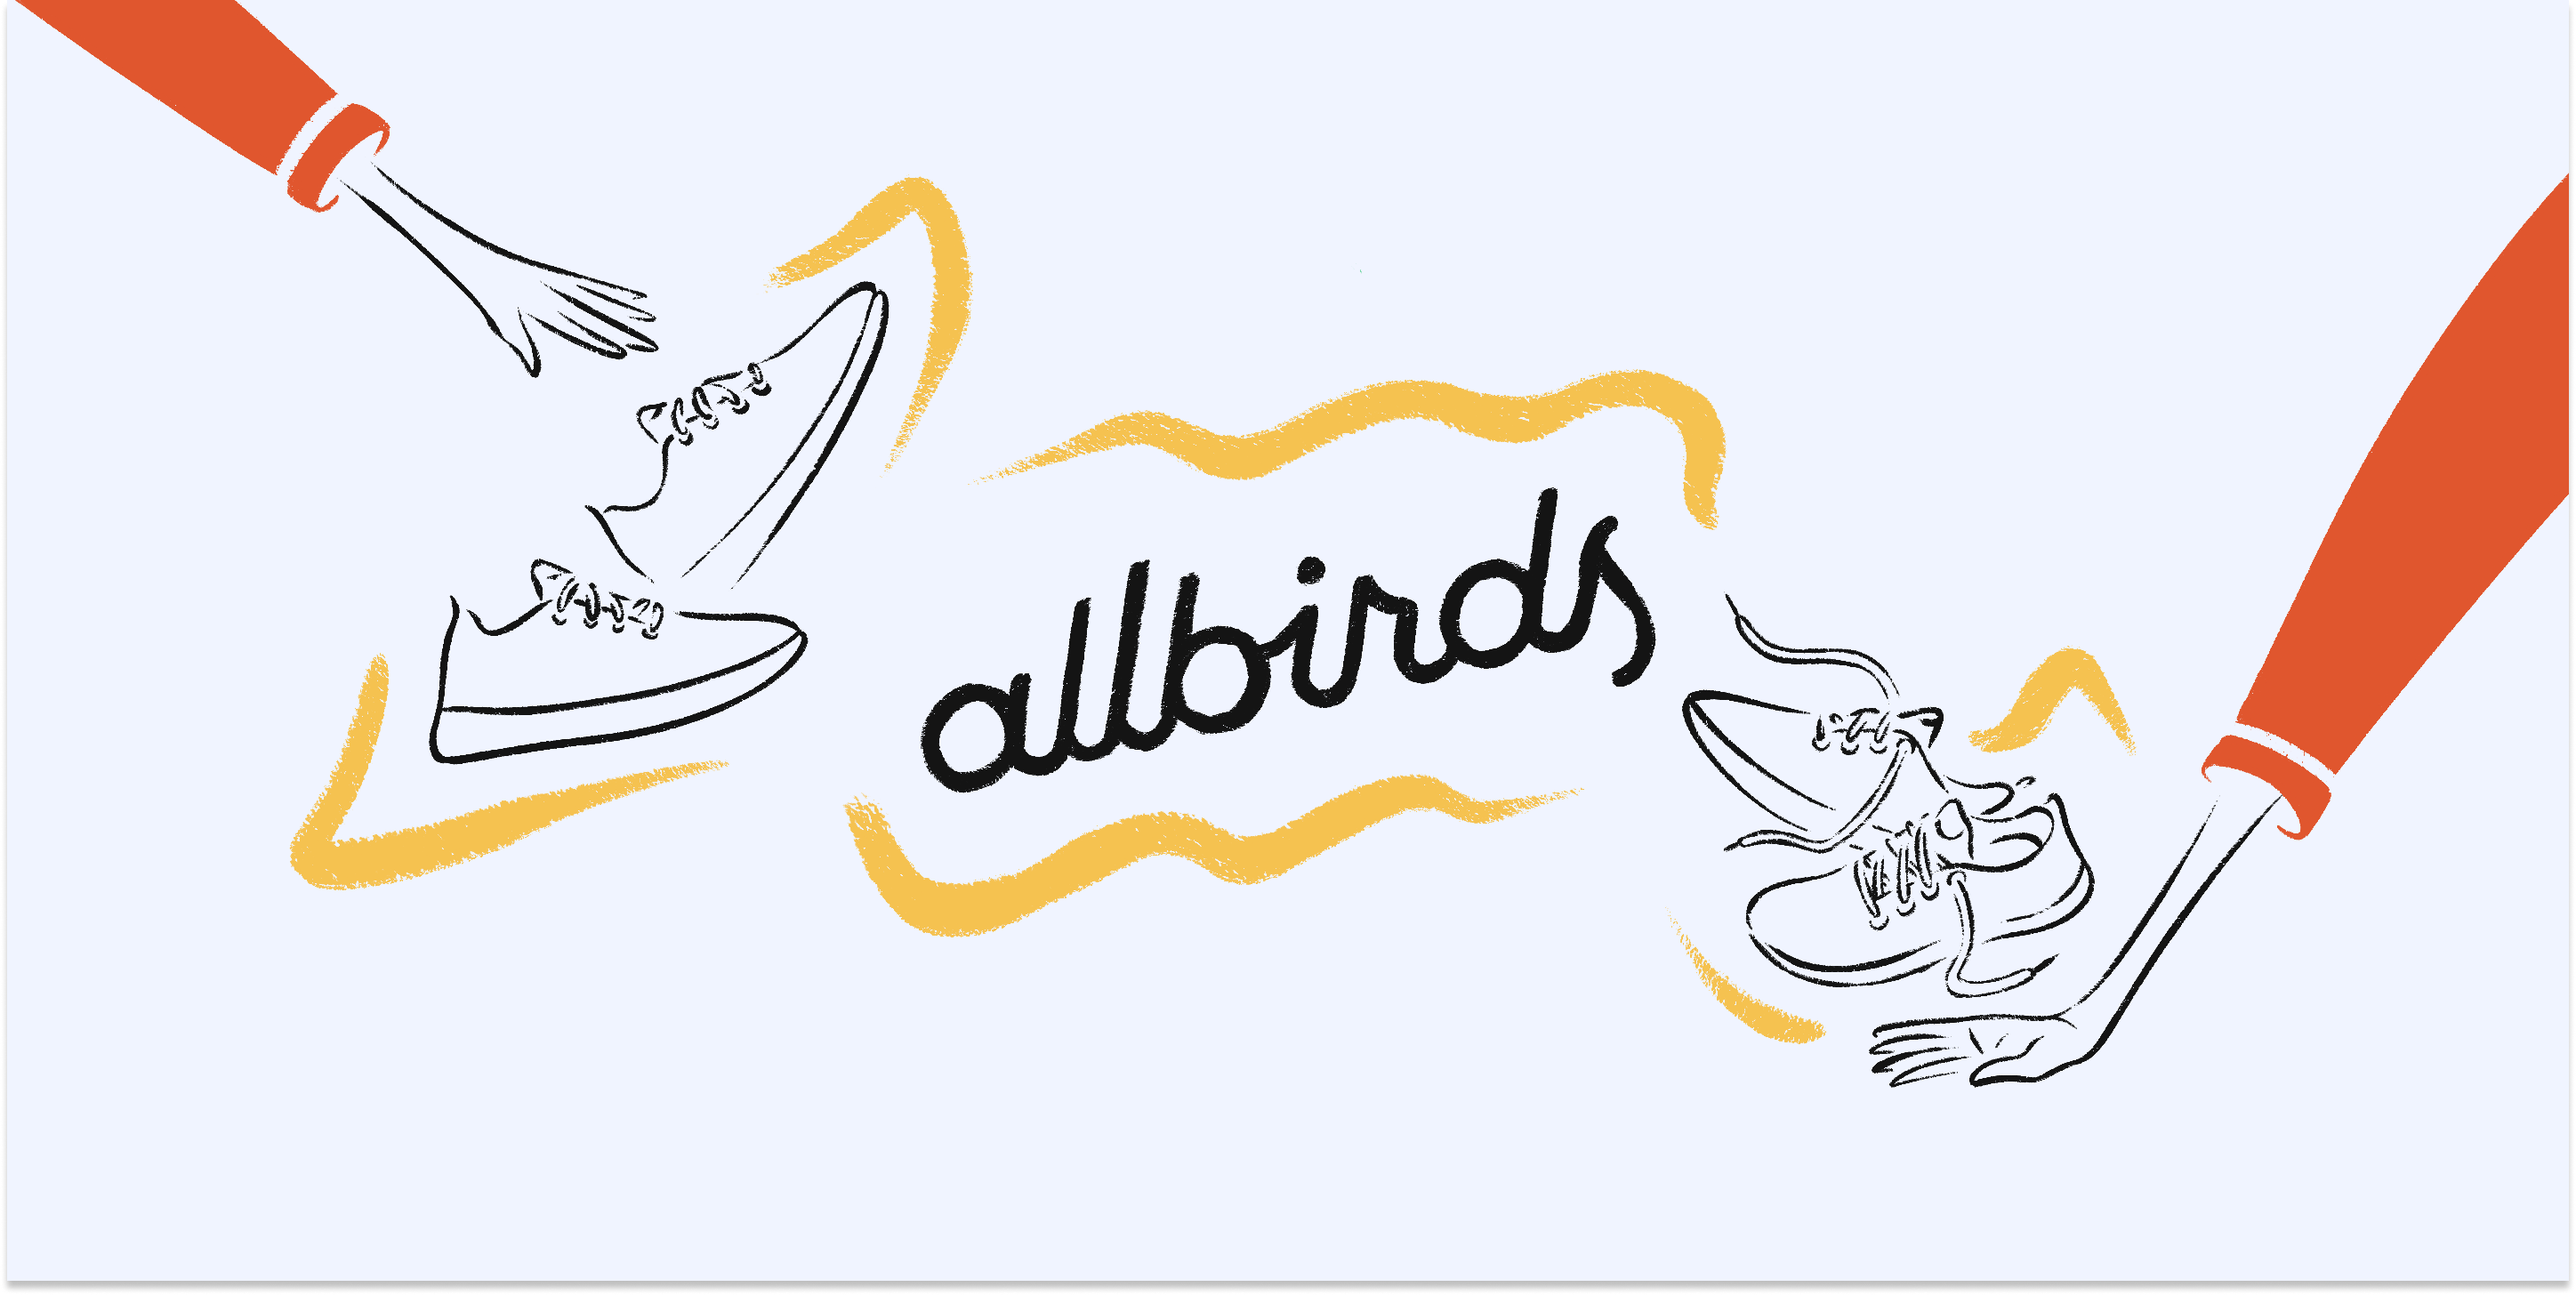 Allbirds ventures into sustainable underwear, Fashion & Retail News